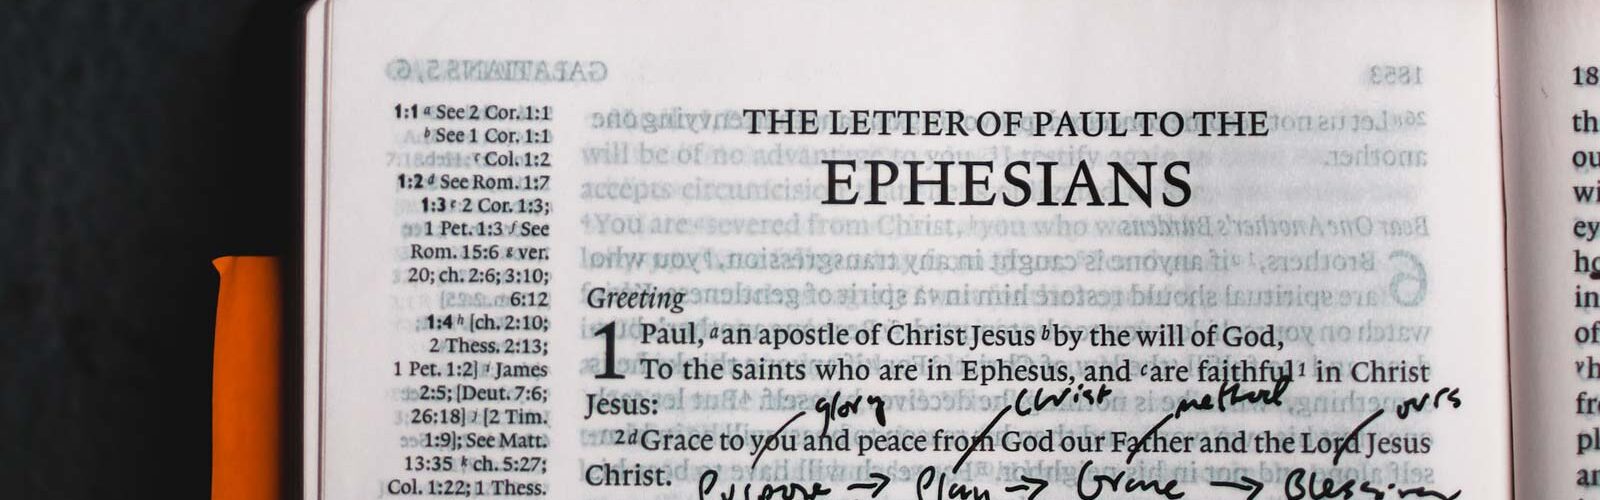 Ephesians sermon theme